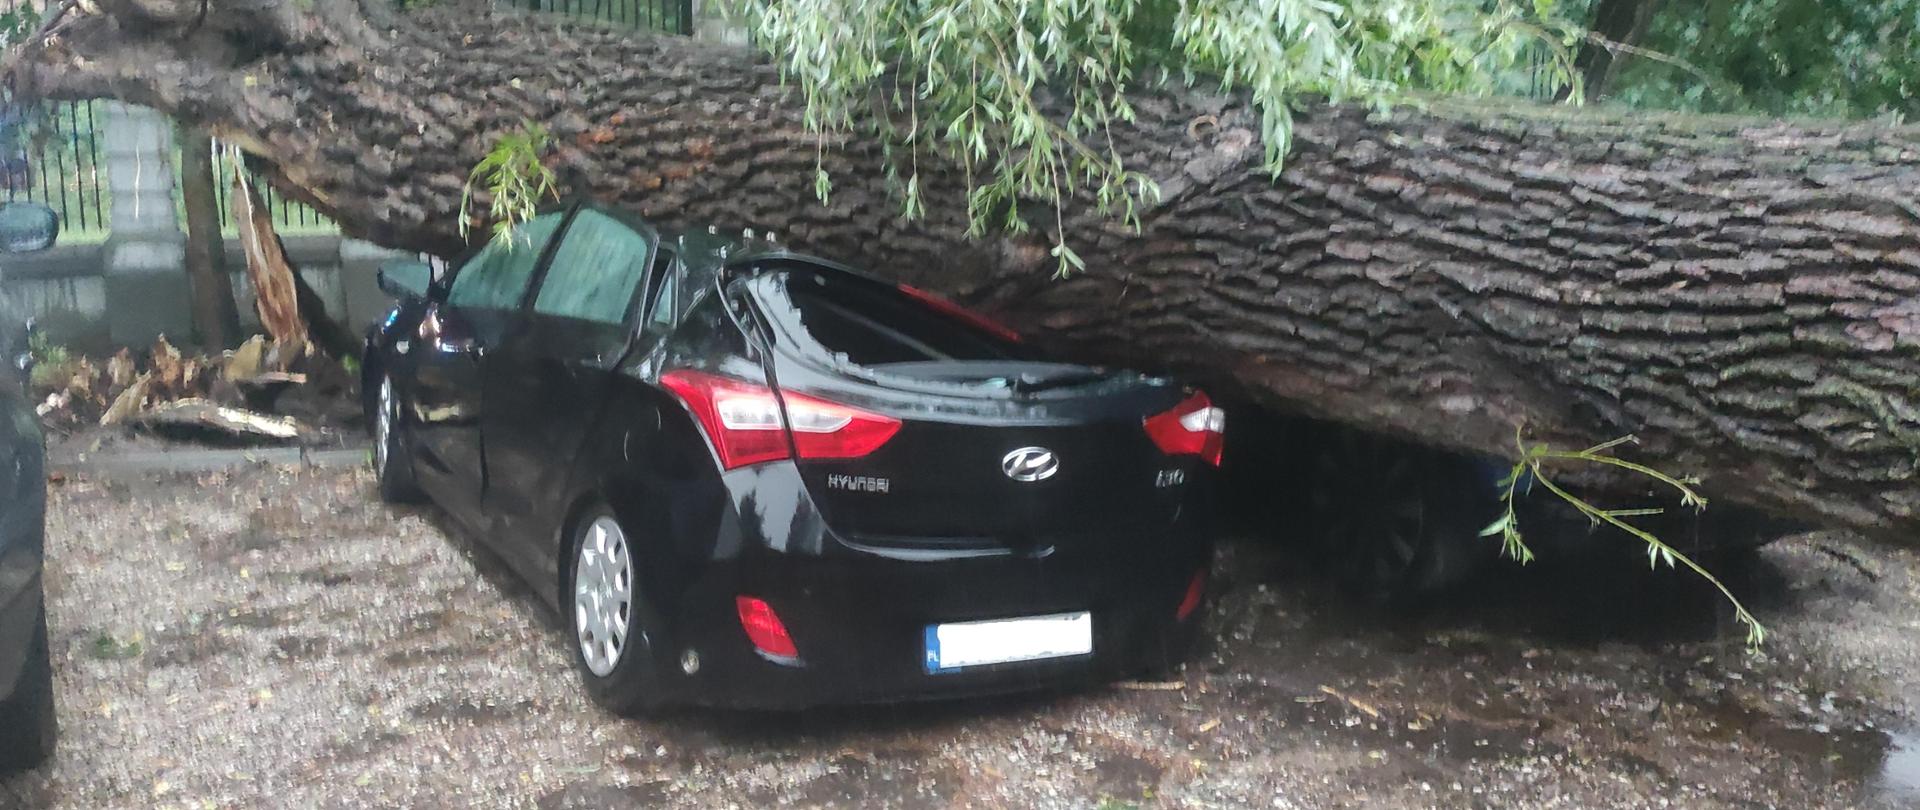  Na zdjęciu widoczna jest grube drzewo, które przygniotło czarny samochód osobowy stojący na parkingu. Na drugim planie widać ogrodzenie, na którym też leży drzewo.